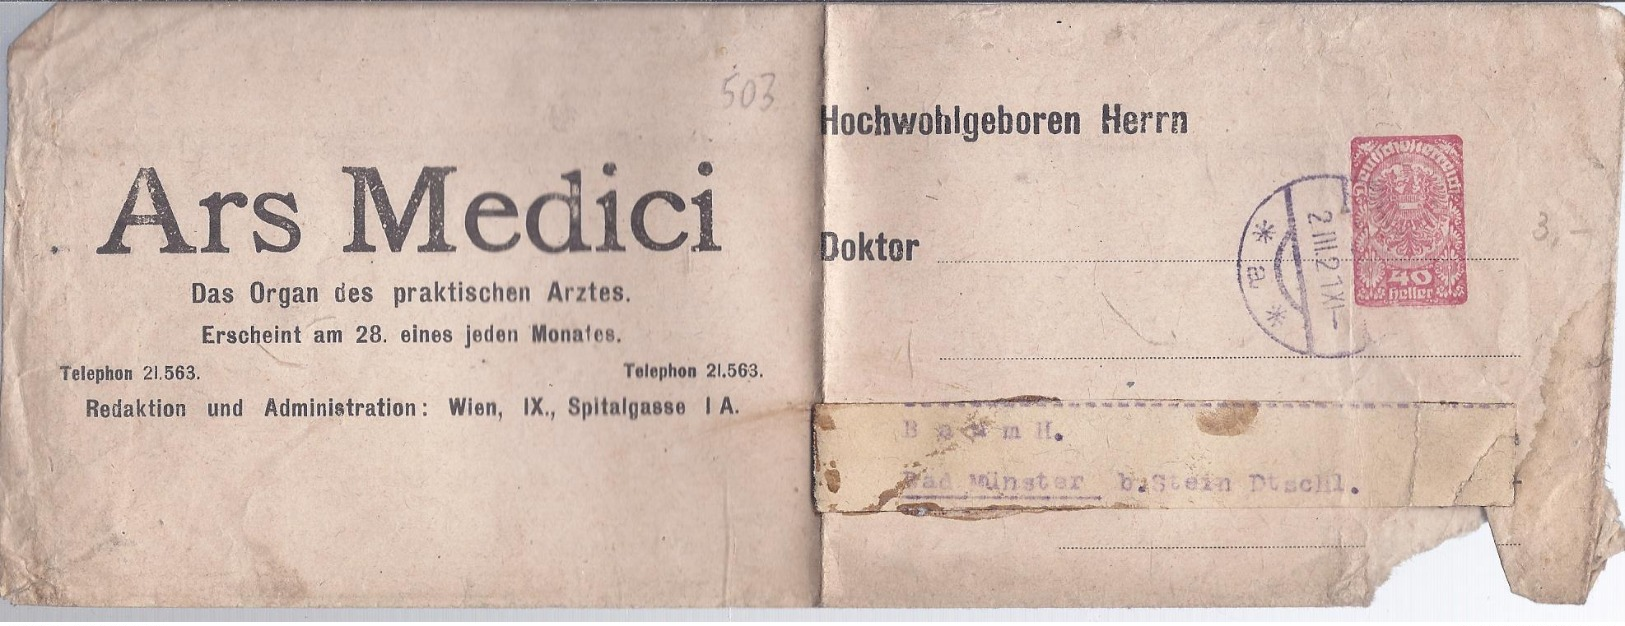 AK-div.26-503  - Zeitungsumschlag Gebr. - Ars Medici - Giornali